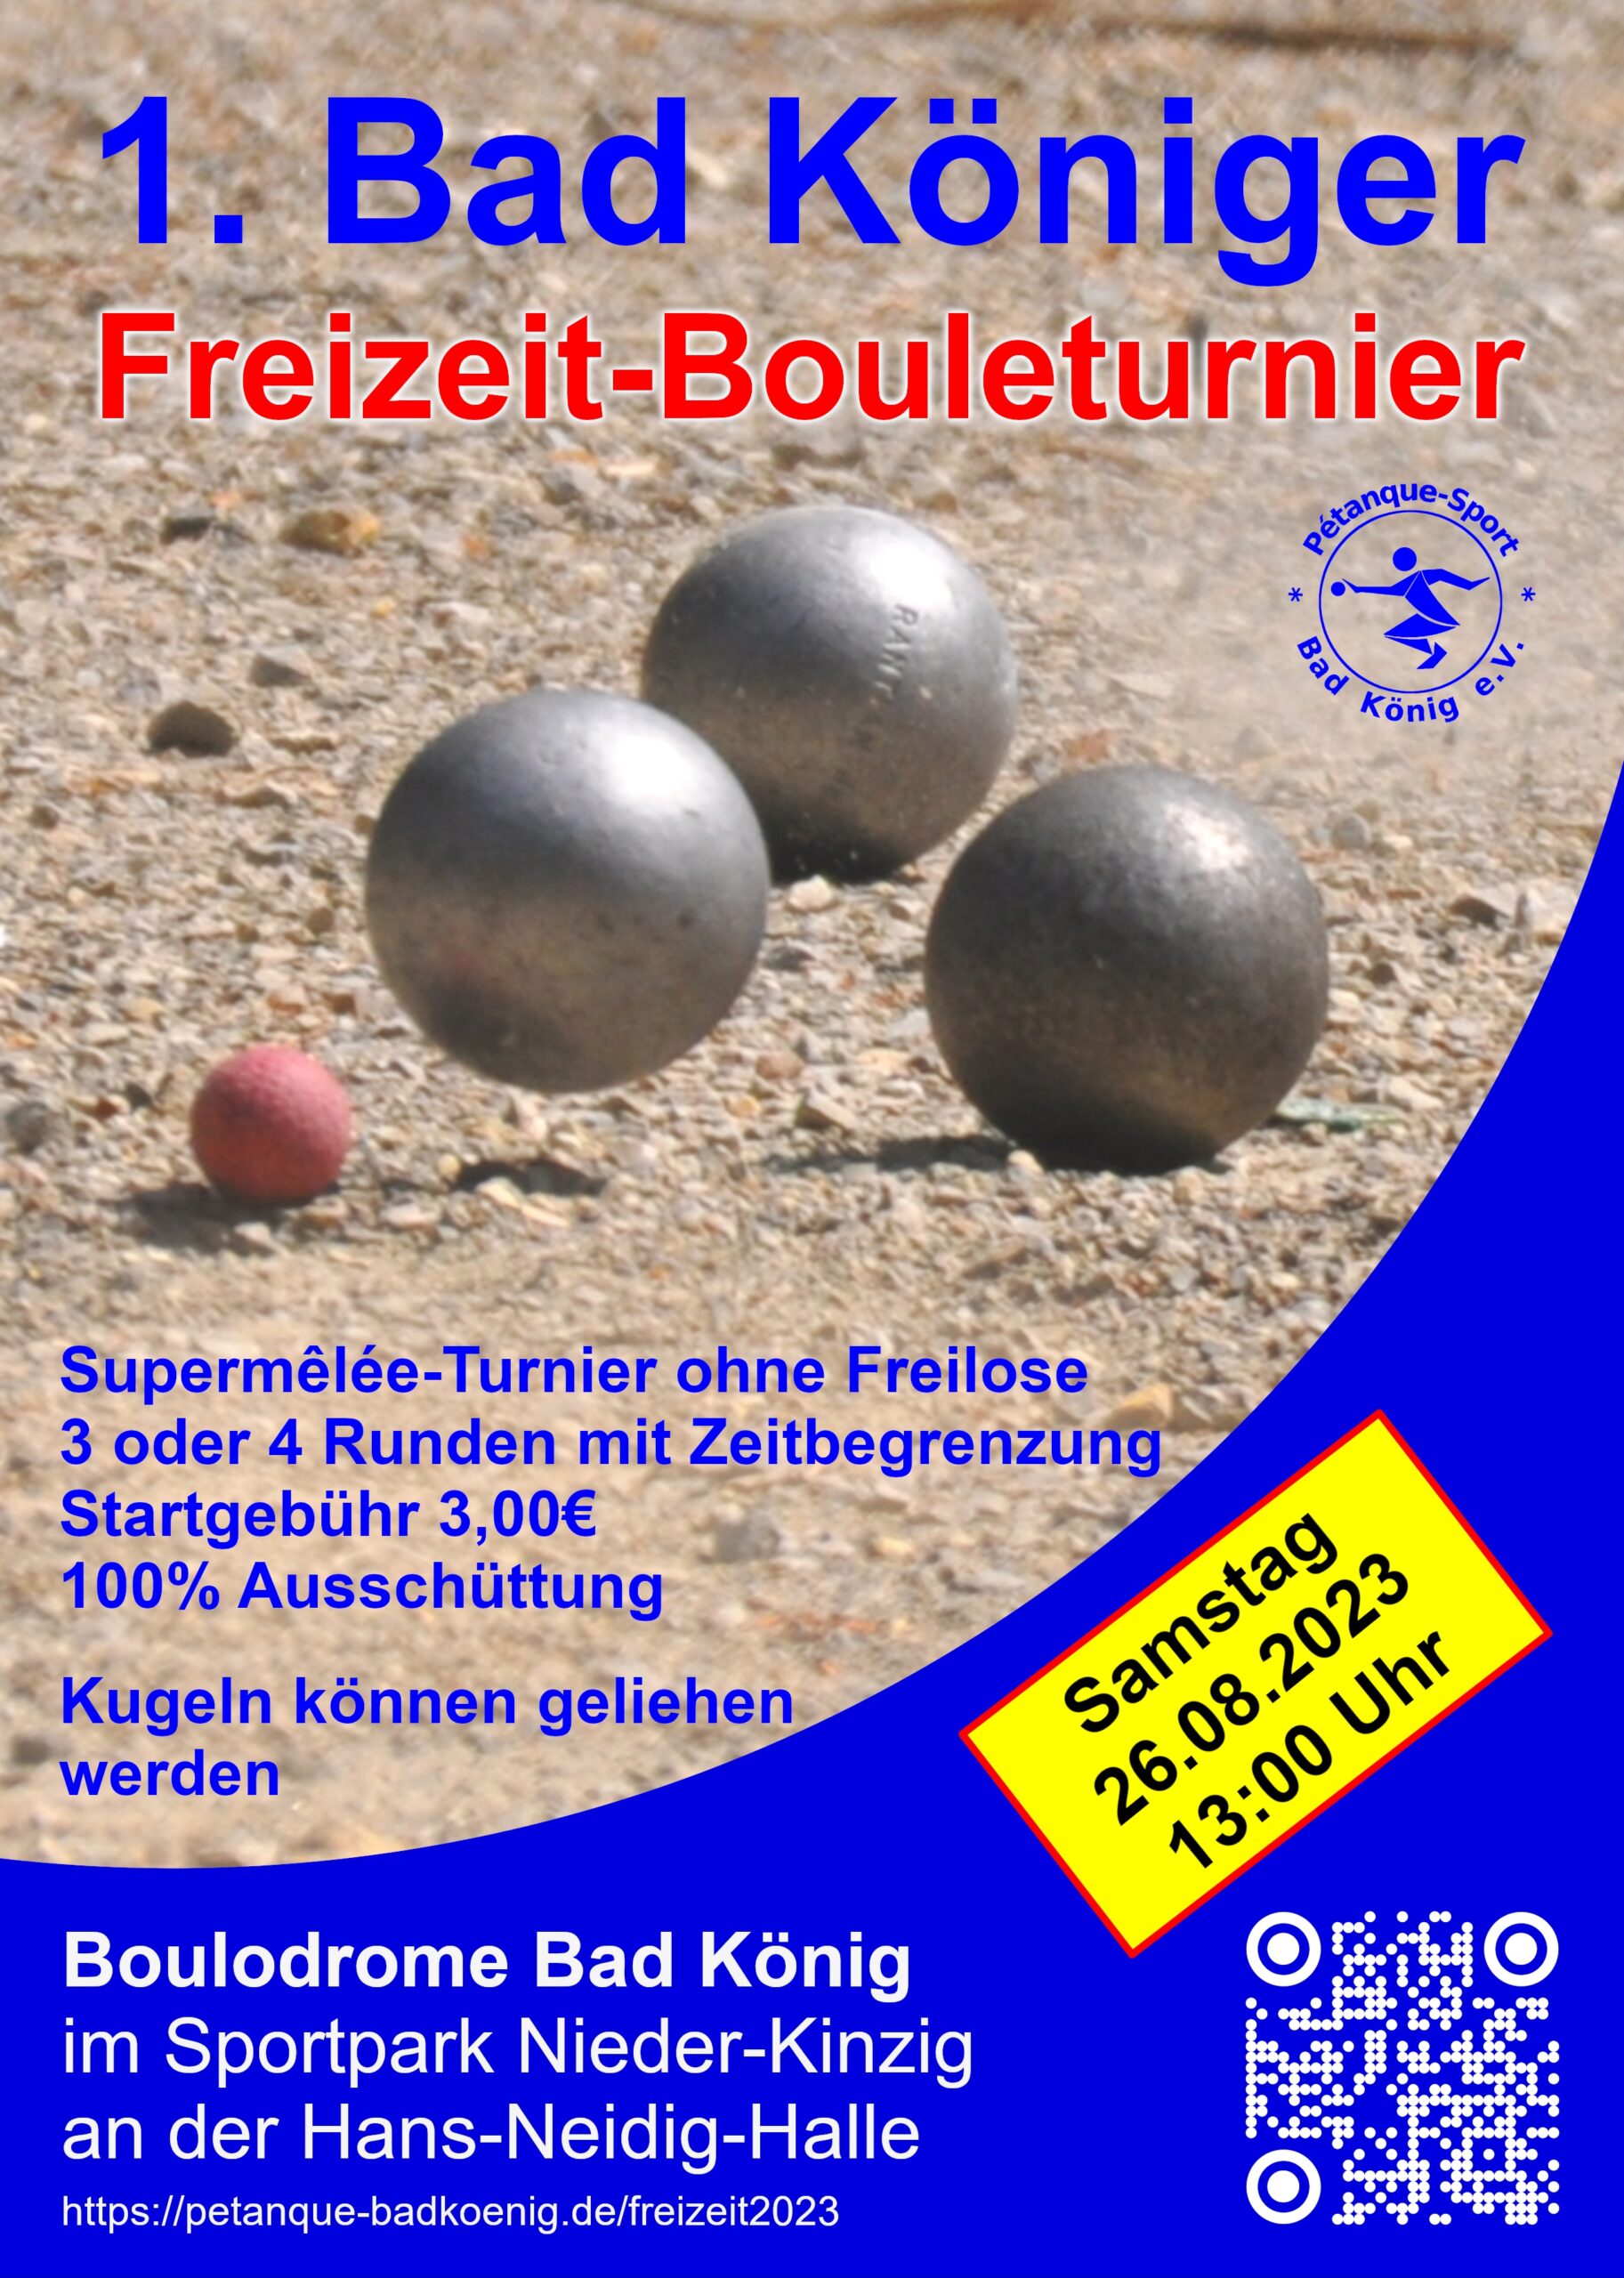 1. Bad Königer Freizeit-Bouleturnier